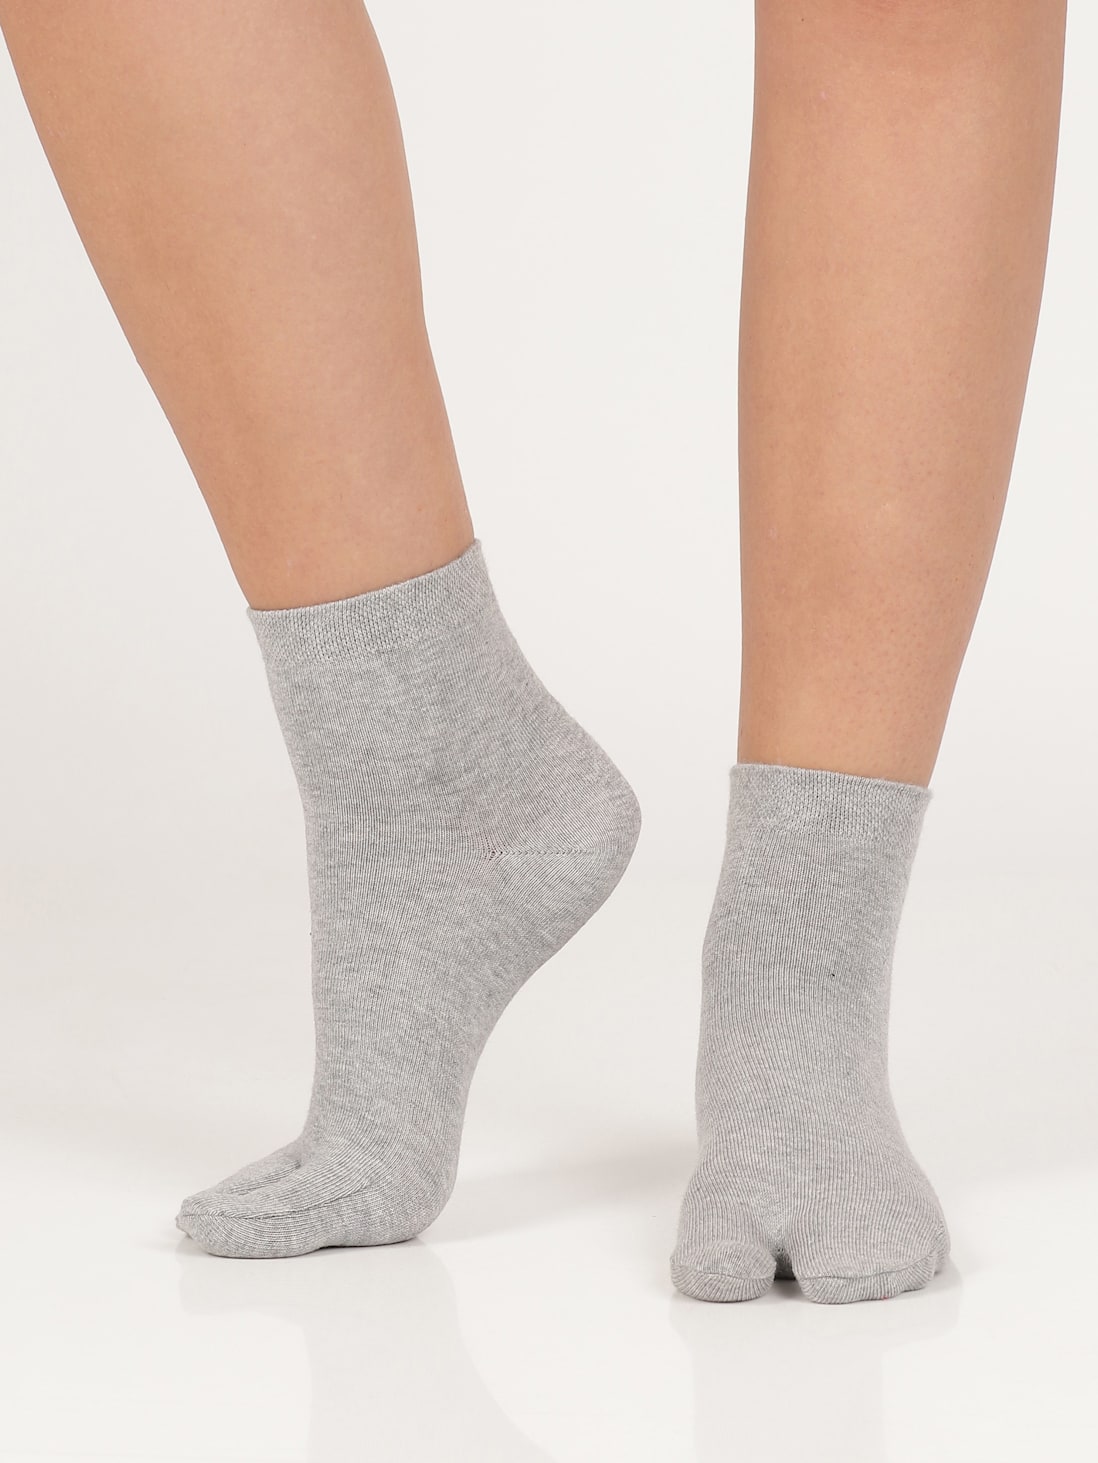 TOETOE® Socks - Knee-High Toe Socks Black&Grey Unisize